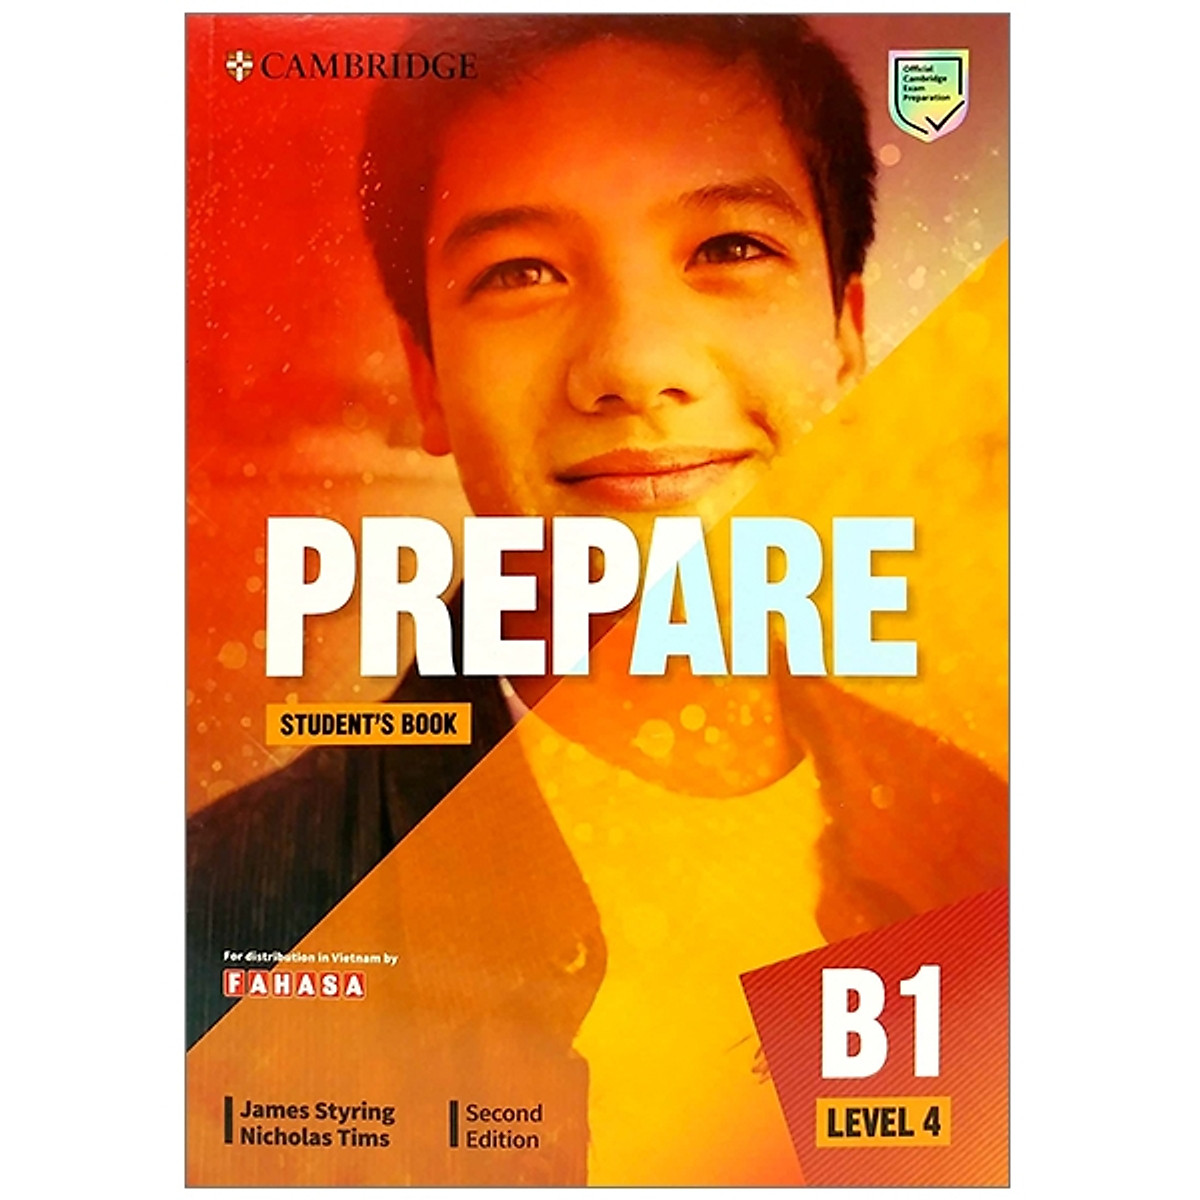 Prepare B1 Level 4 Student's Book